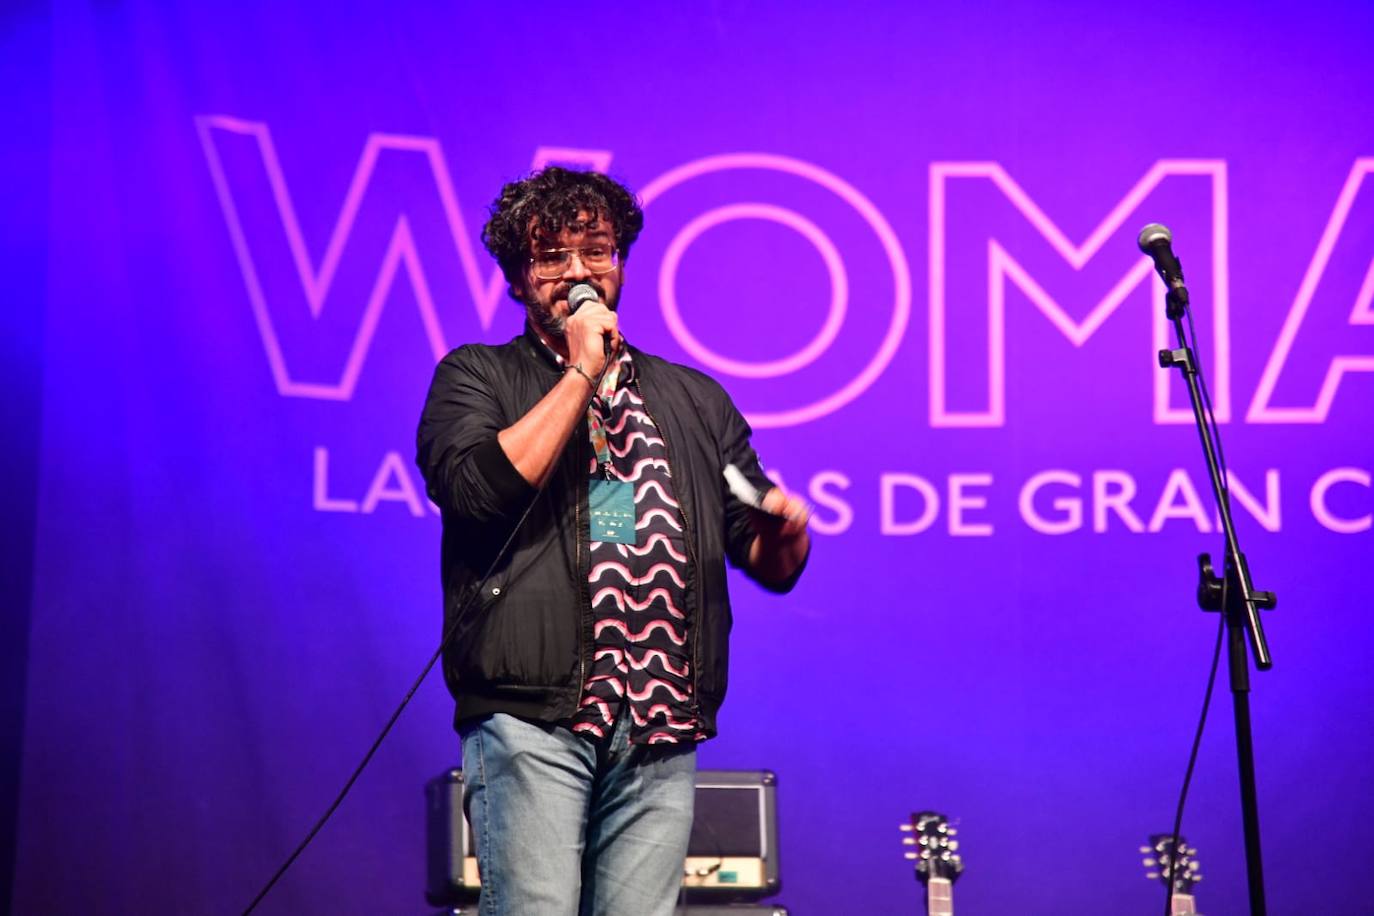 Fotos: El Womad sube el telón con la mezcla de música mauritana y pop de Noura